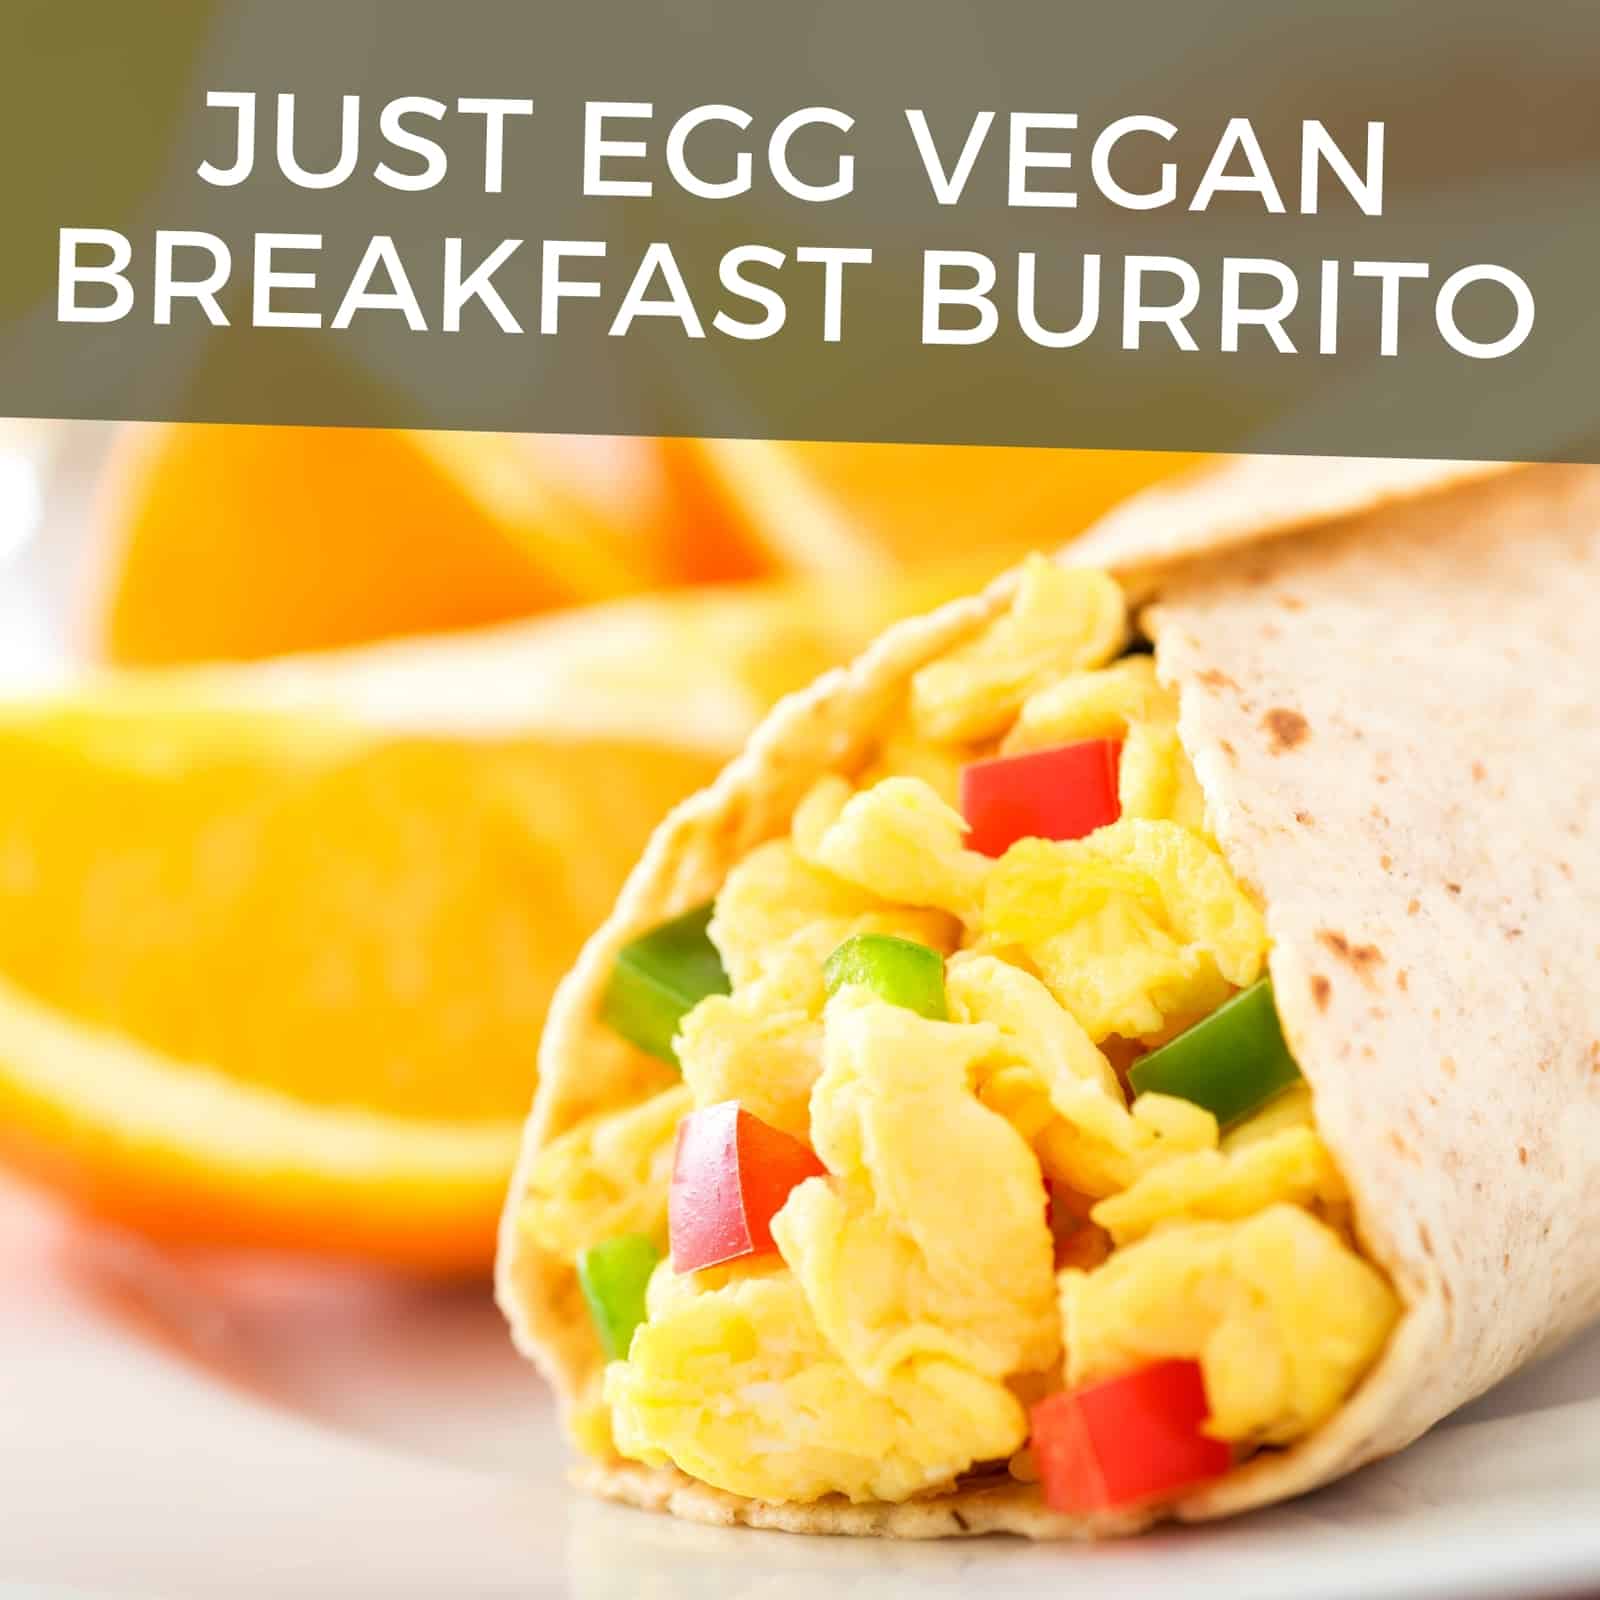 Bara egg vegan vegan burrito